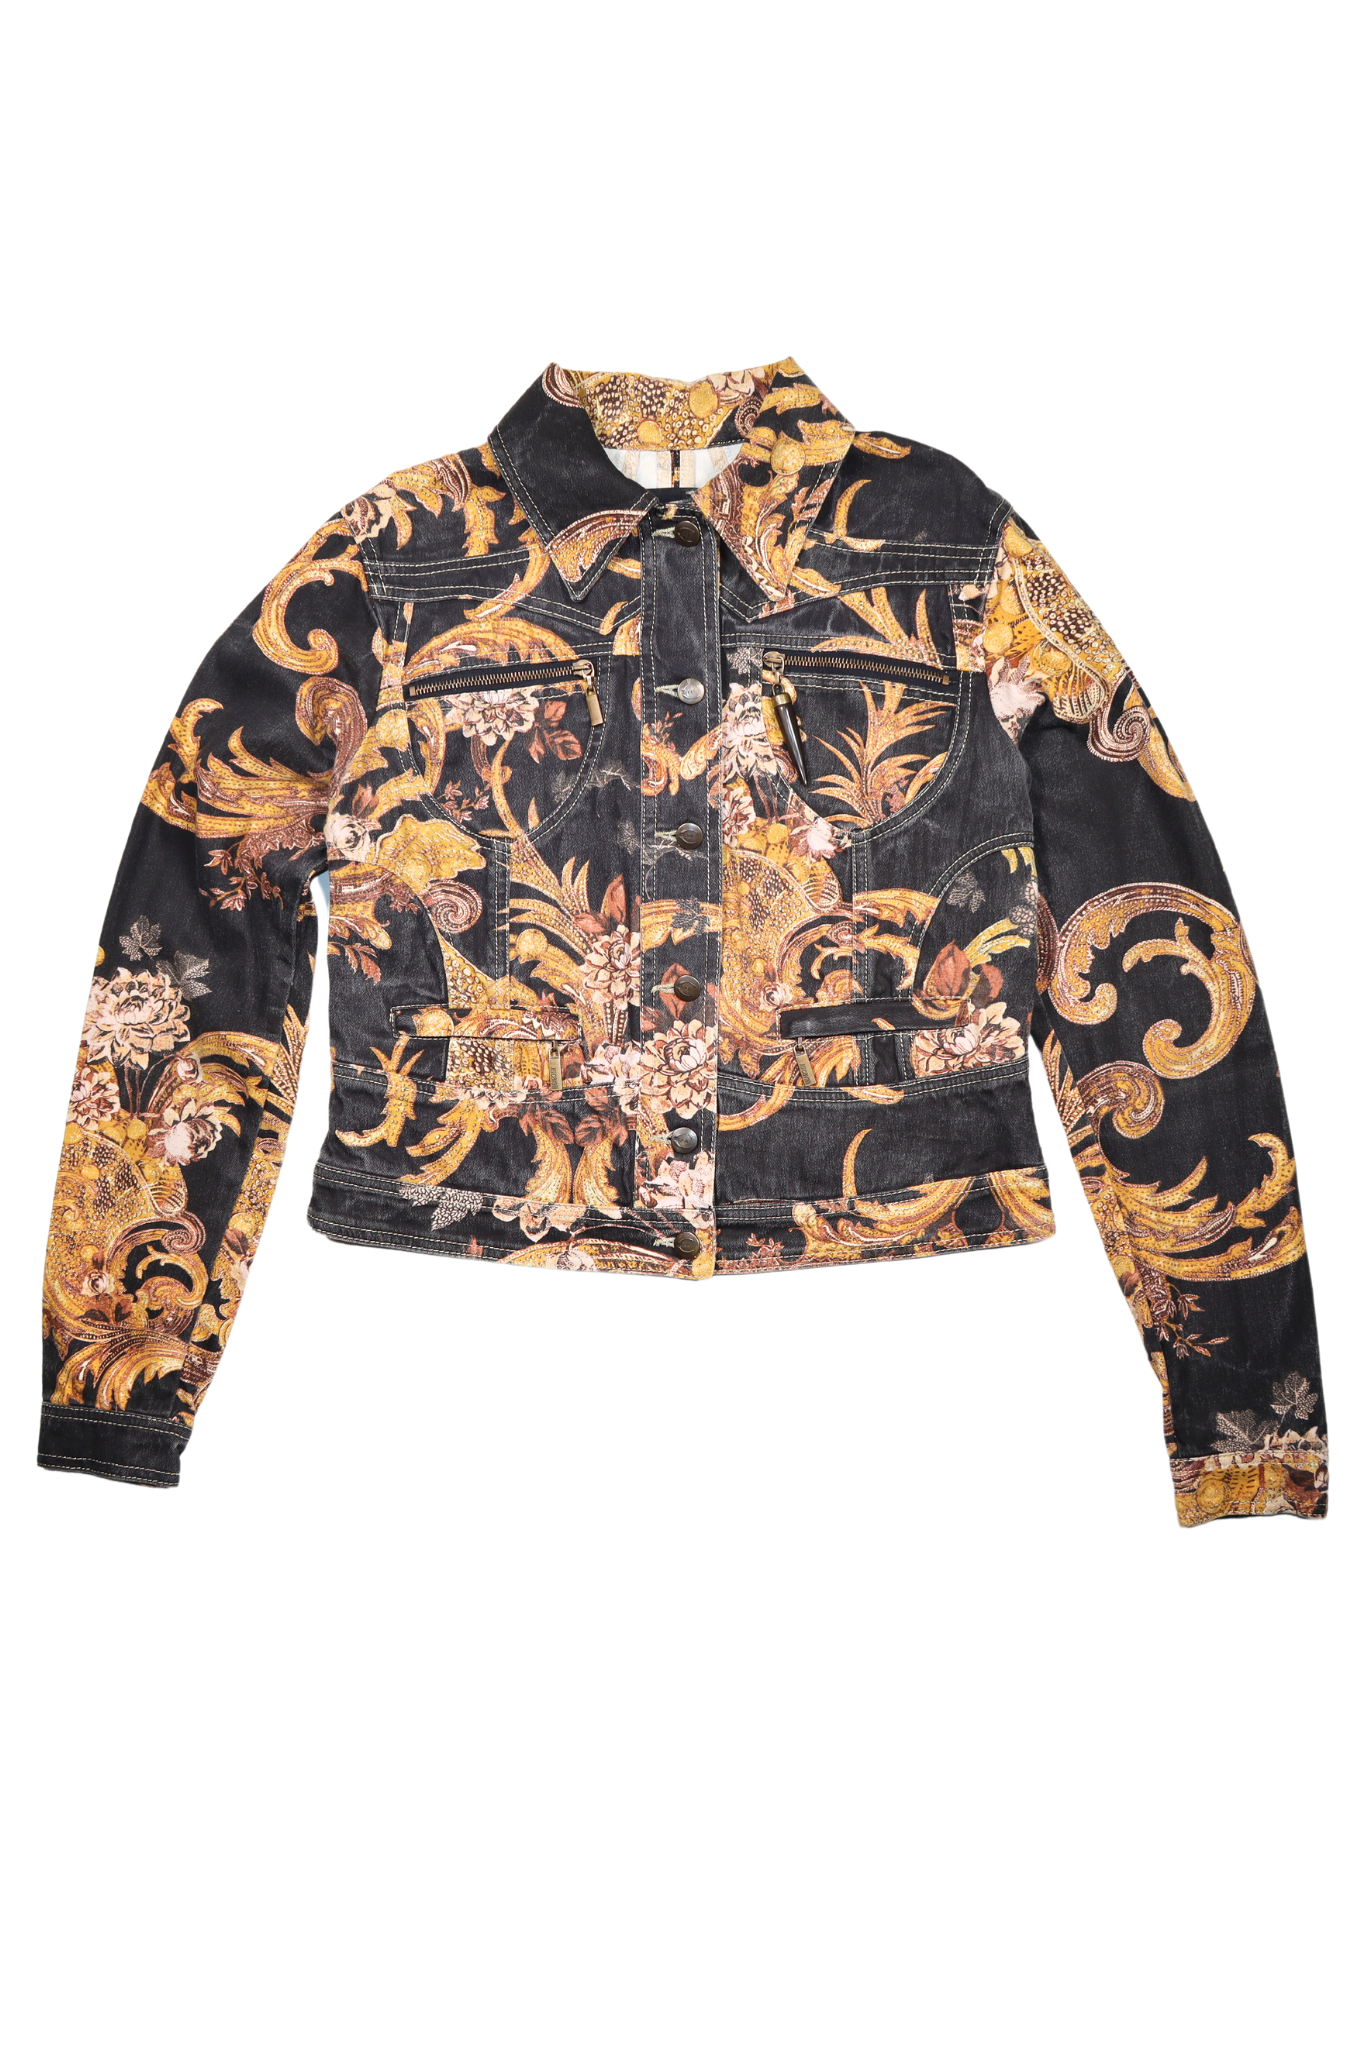 Cavalli Ornate Printed Denim Jacket